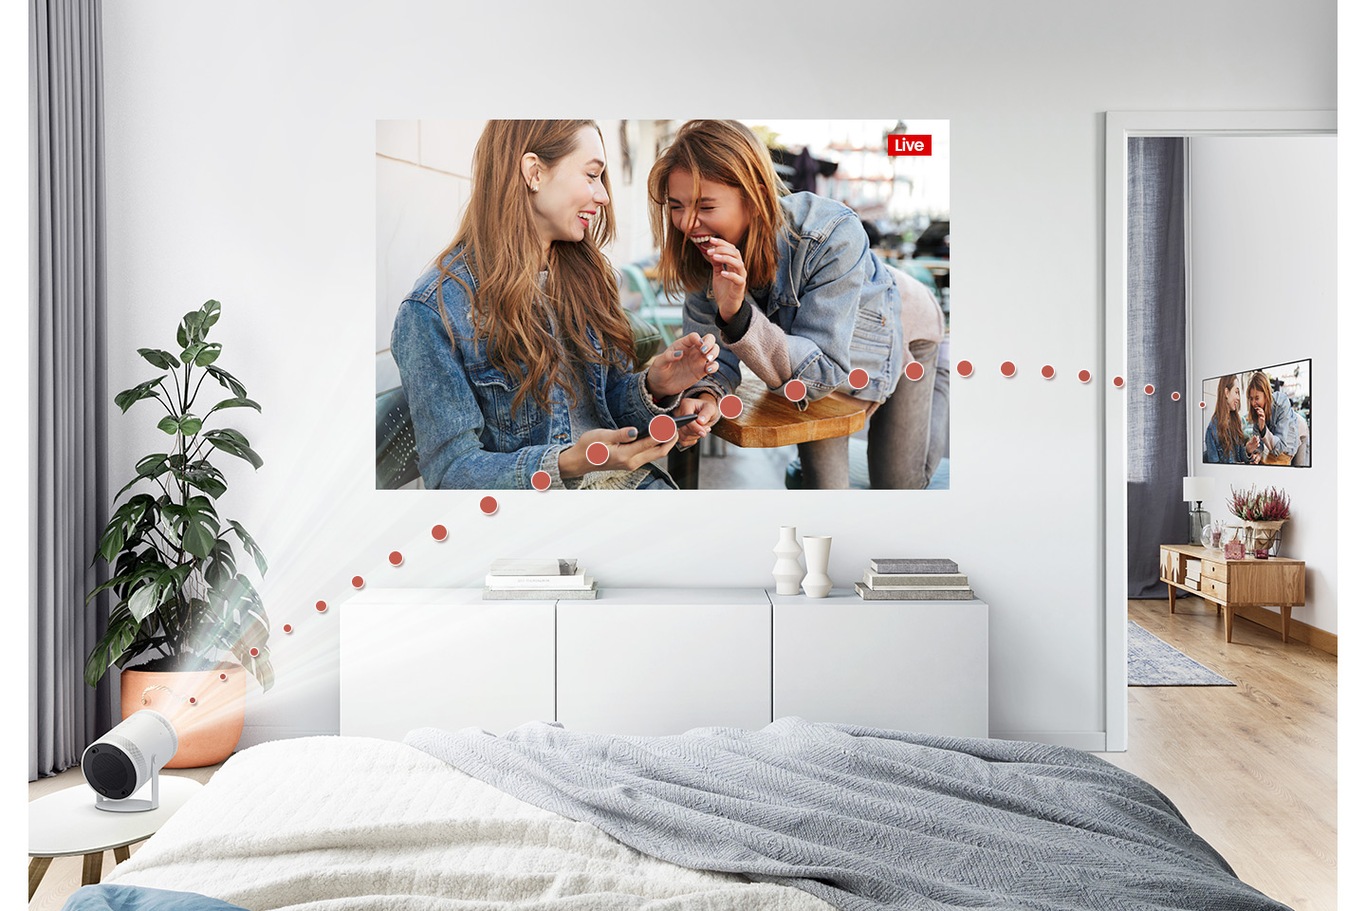 El Freestyle está conectado a la TV de la sala de estar y reproduce contenido de TV en vivo en la habitación.